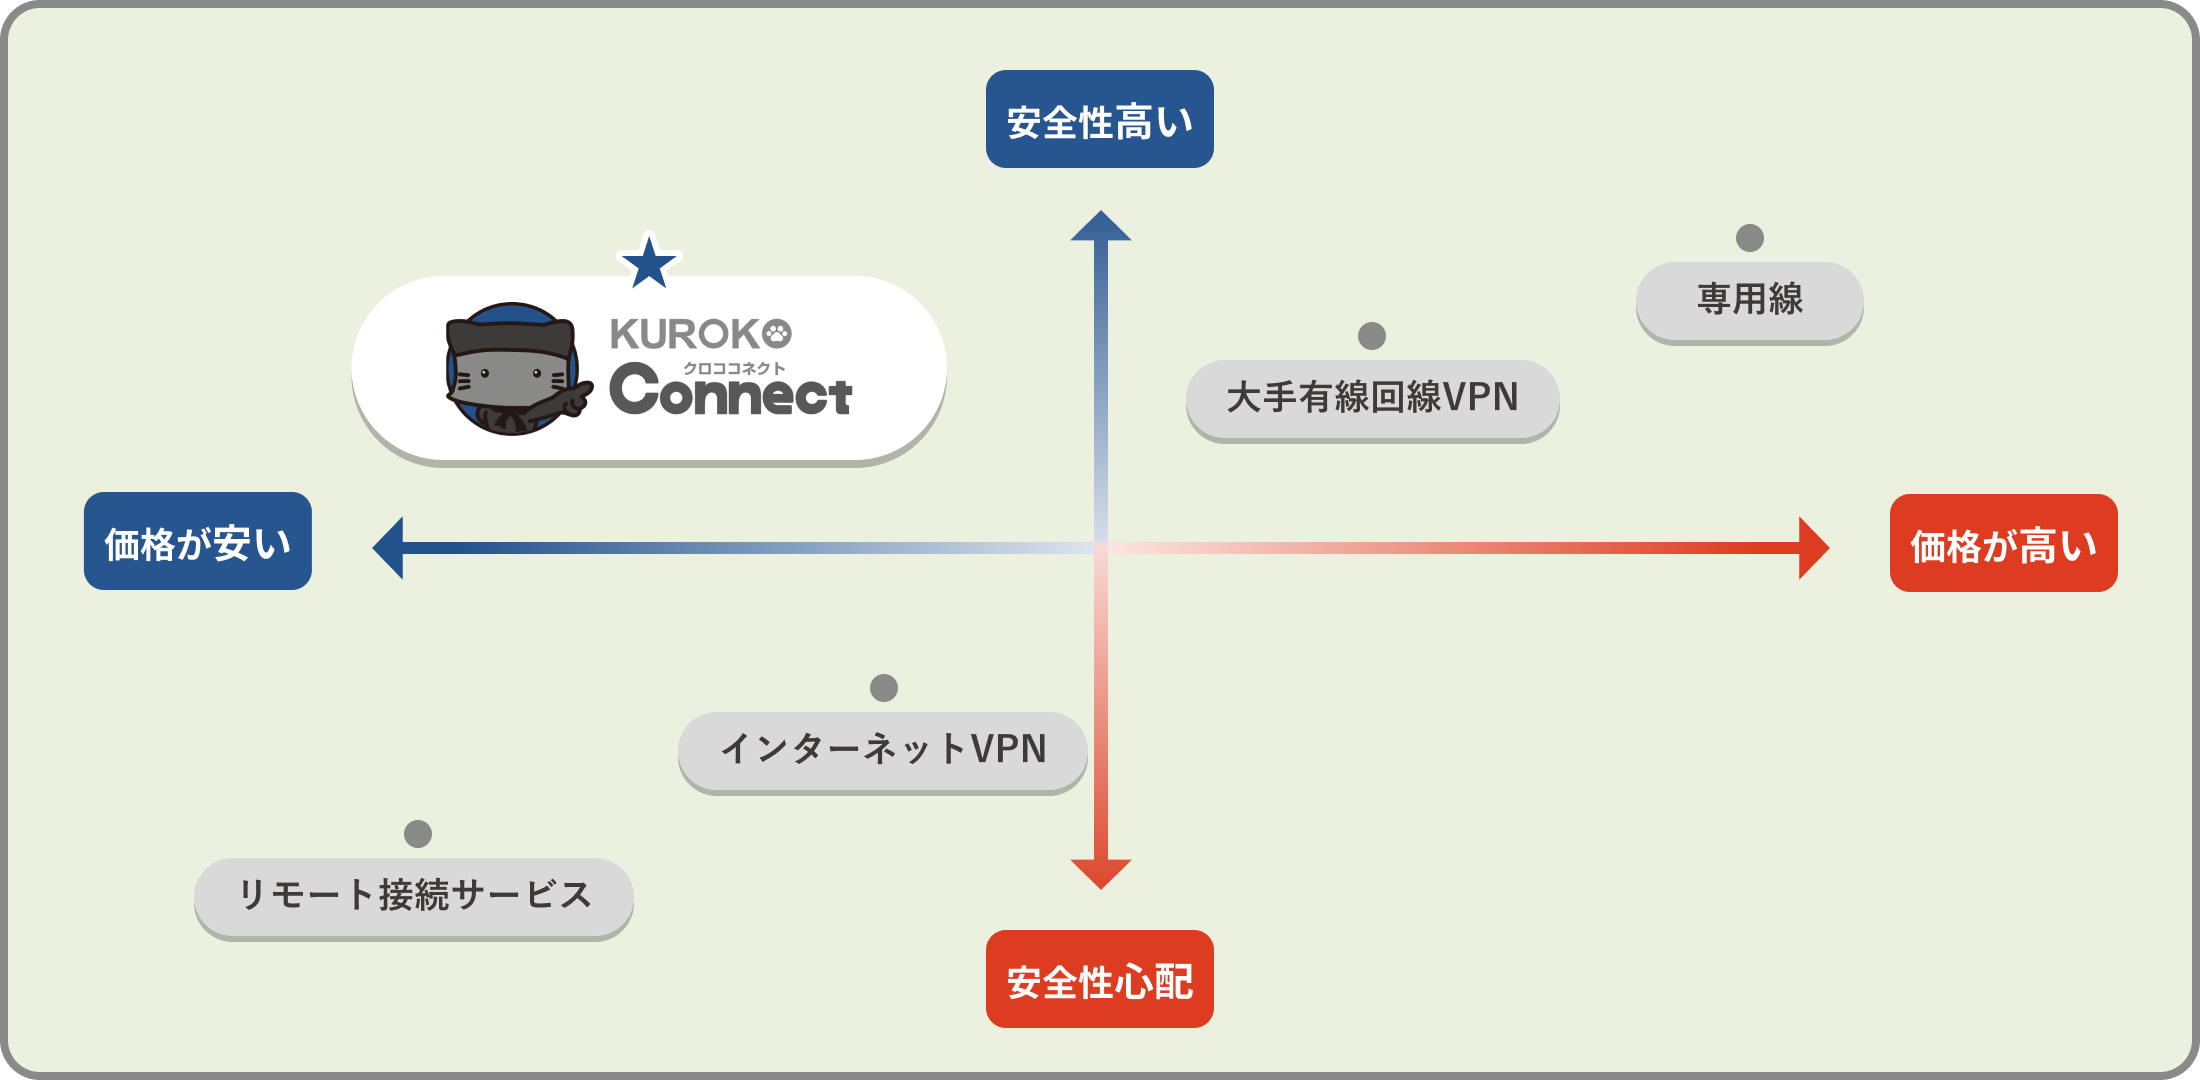 他の接続サービスとの違い 図